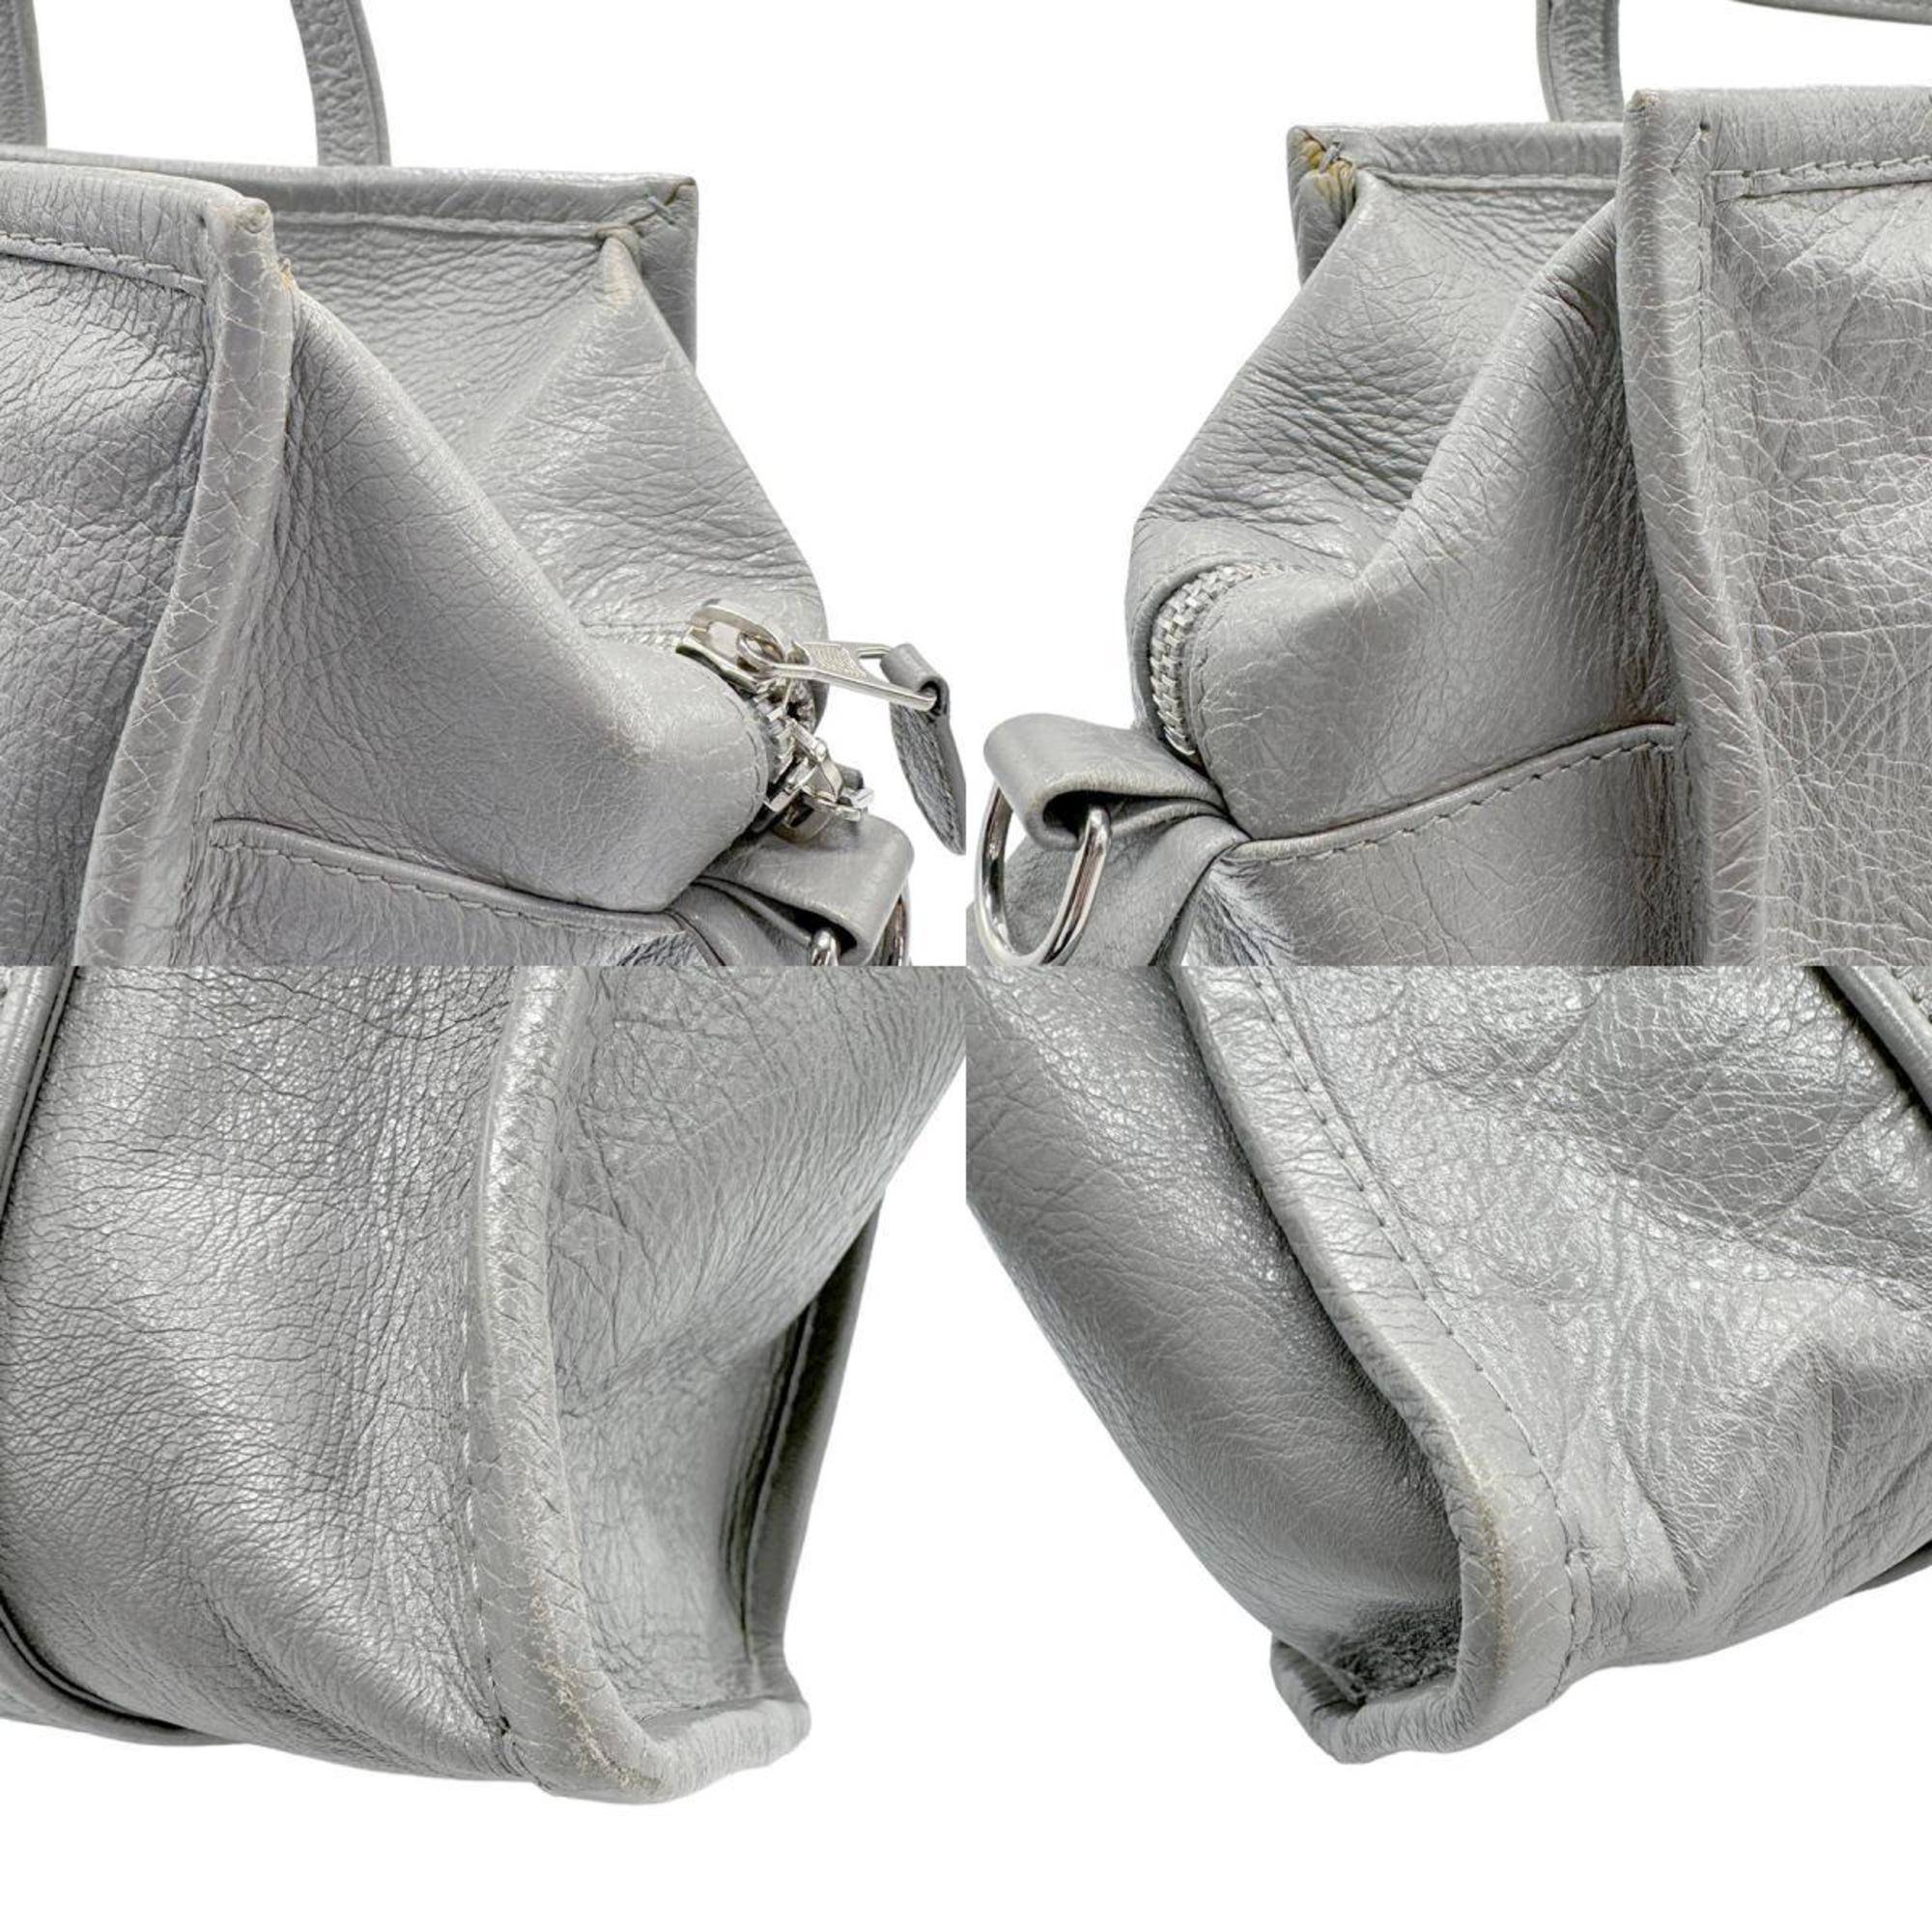 BALENCIAGA Handbag Shoulder Bag Bazaar Shopper Leather Grey Women's 443096 z0984